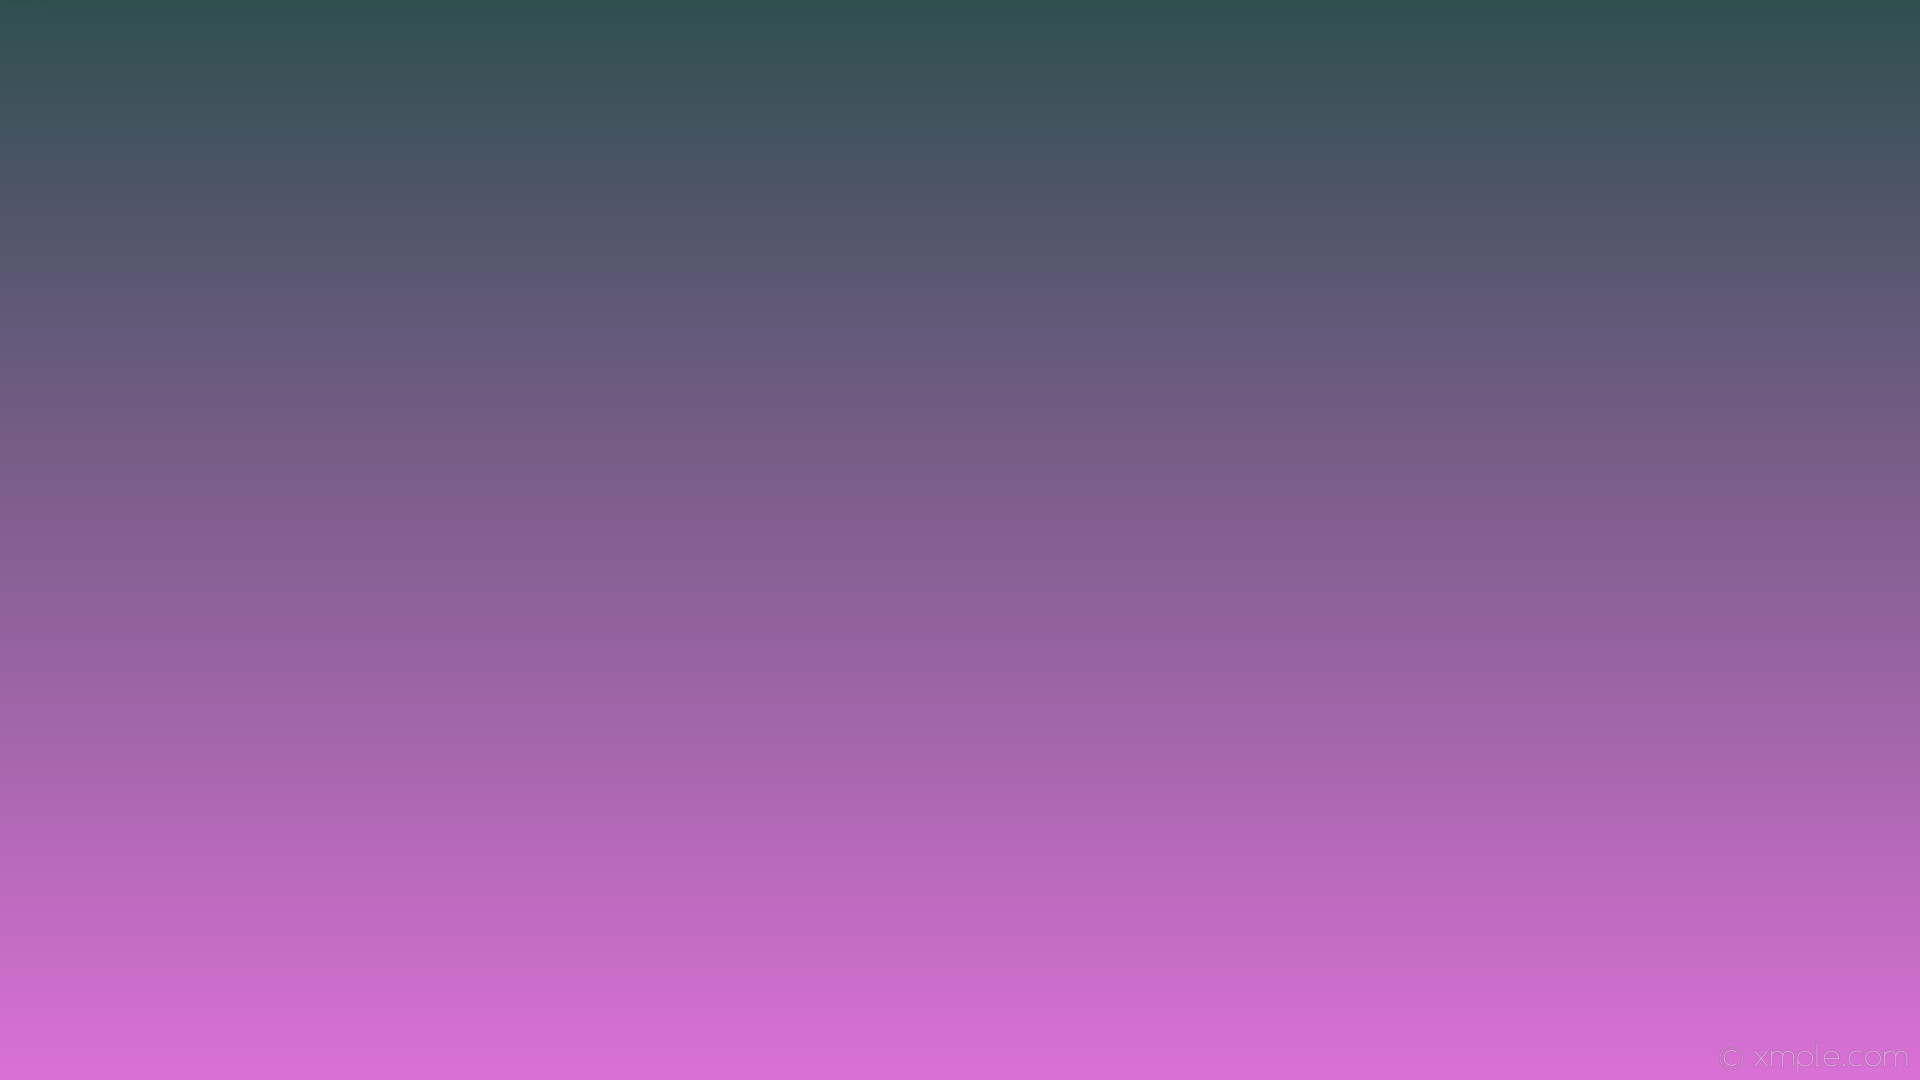 1920x1080 wallpaper gradient linear grey purple dark slate gray orchid #2f4f4f  #da70d6 90Â°